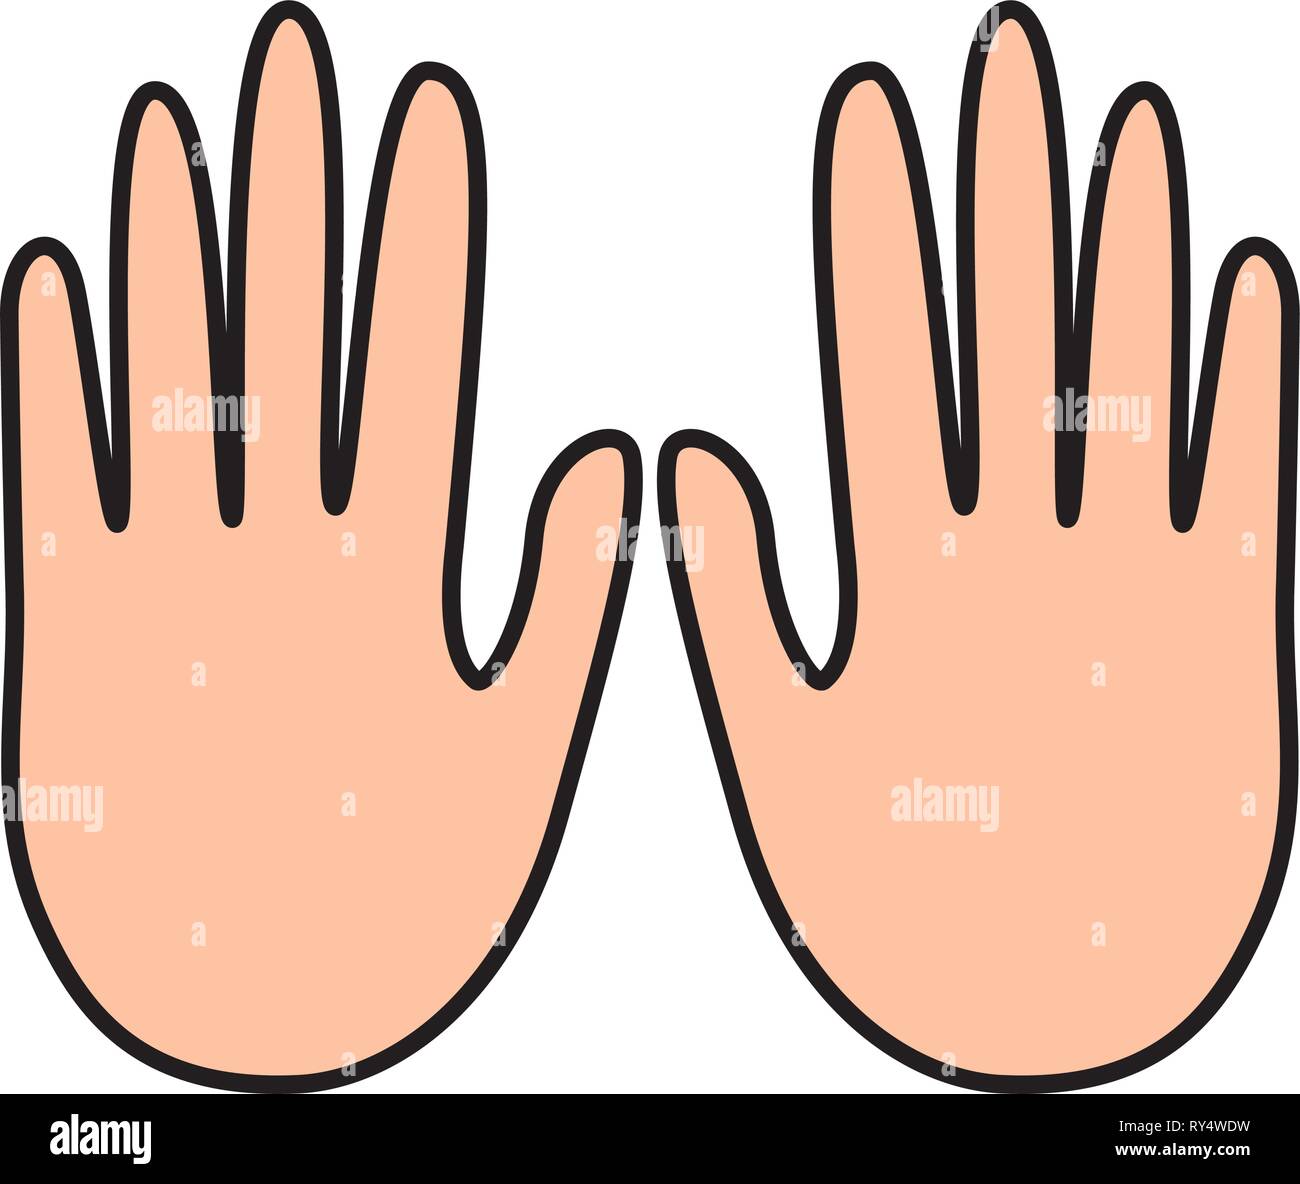 hands showing five fingers Stock Vector Art & Illustration, Vector ...